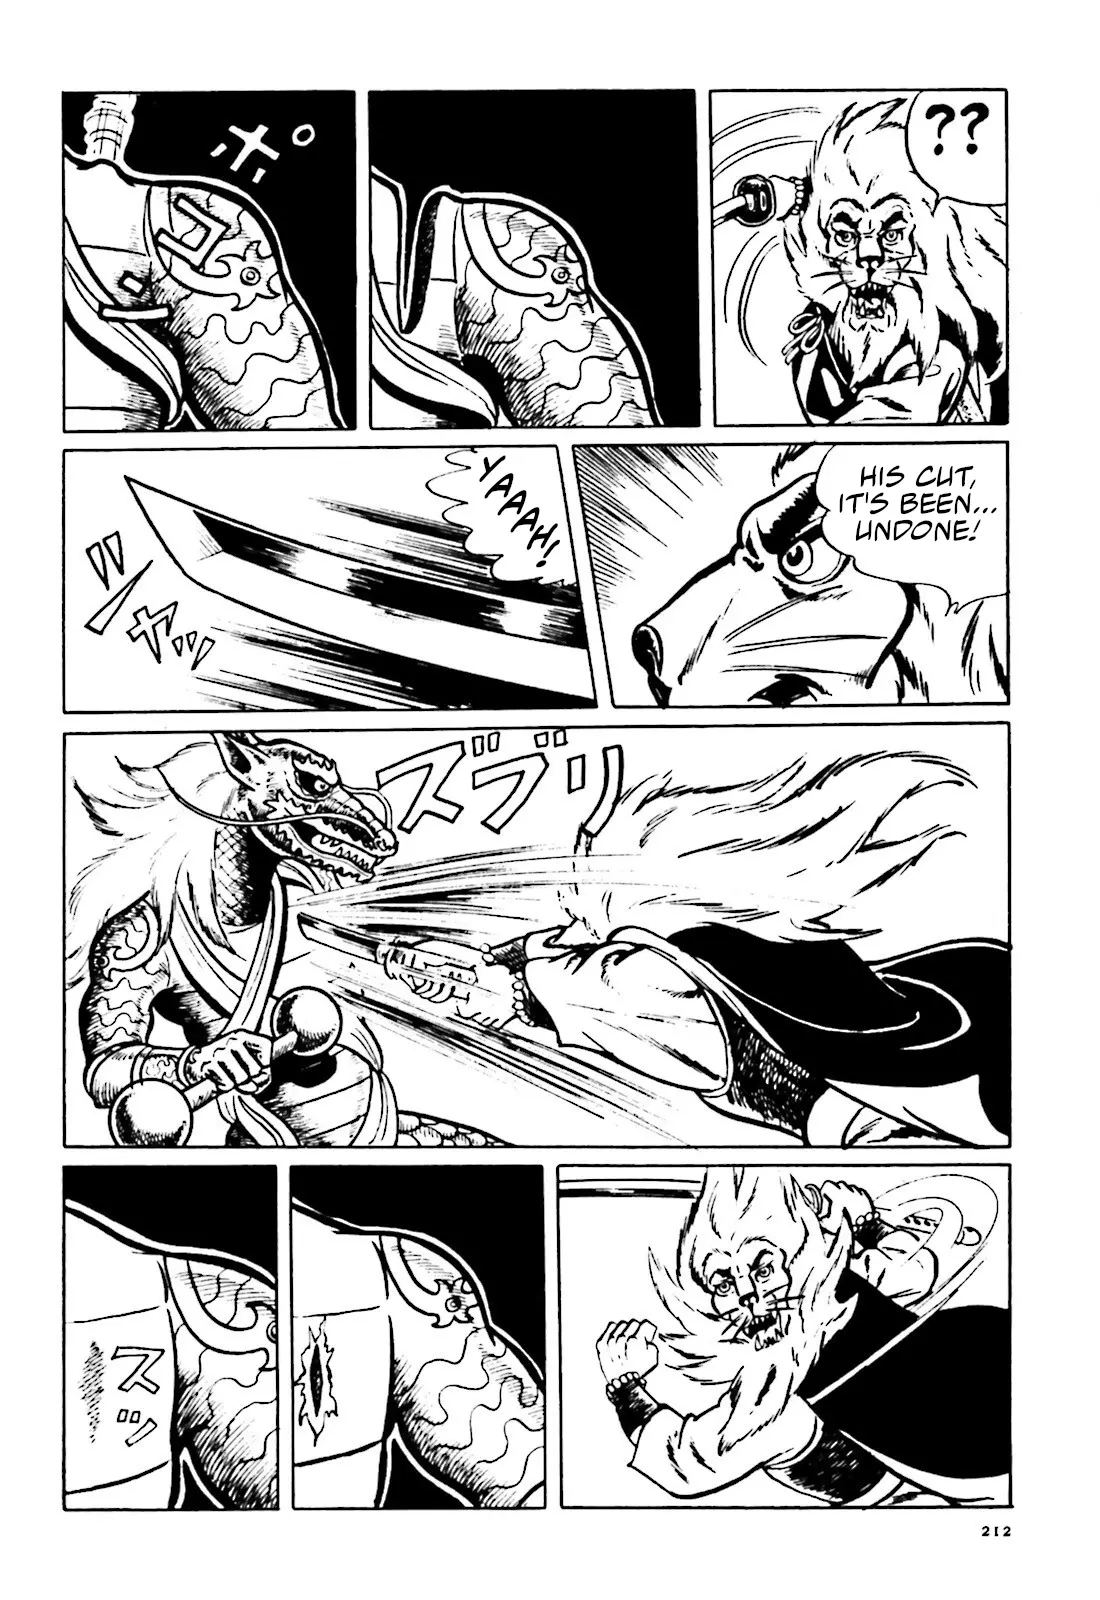 The Vigilant Lionmaru - 13 page 32-c2d54ce6